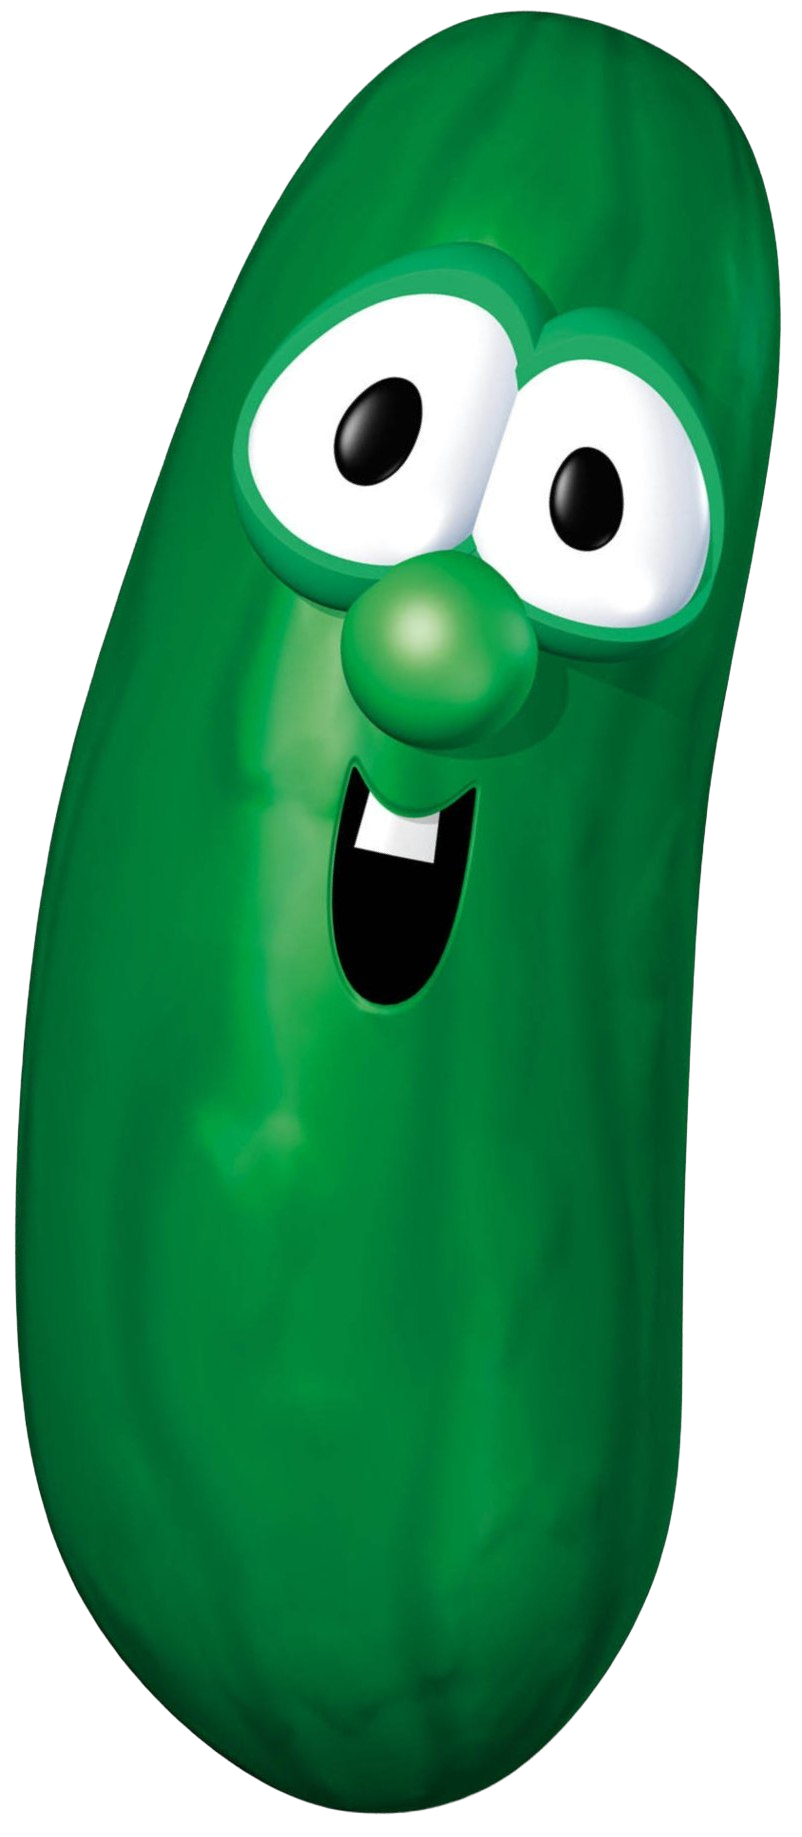 Cucumber - Wikipedia